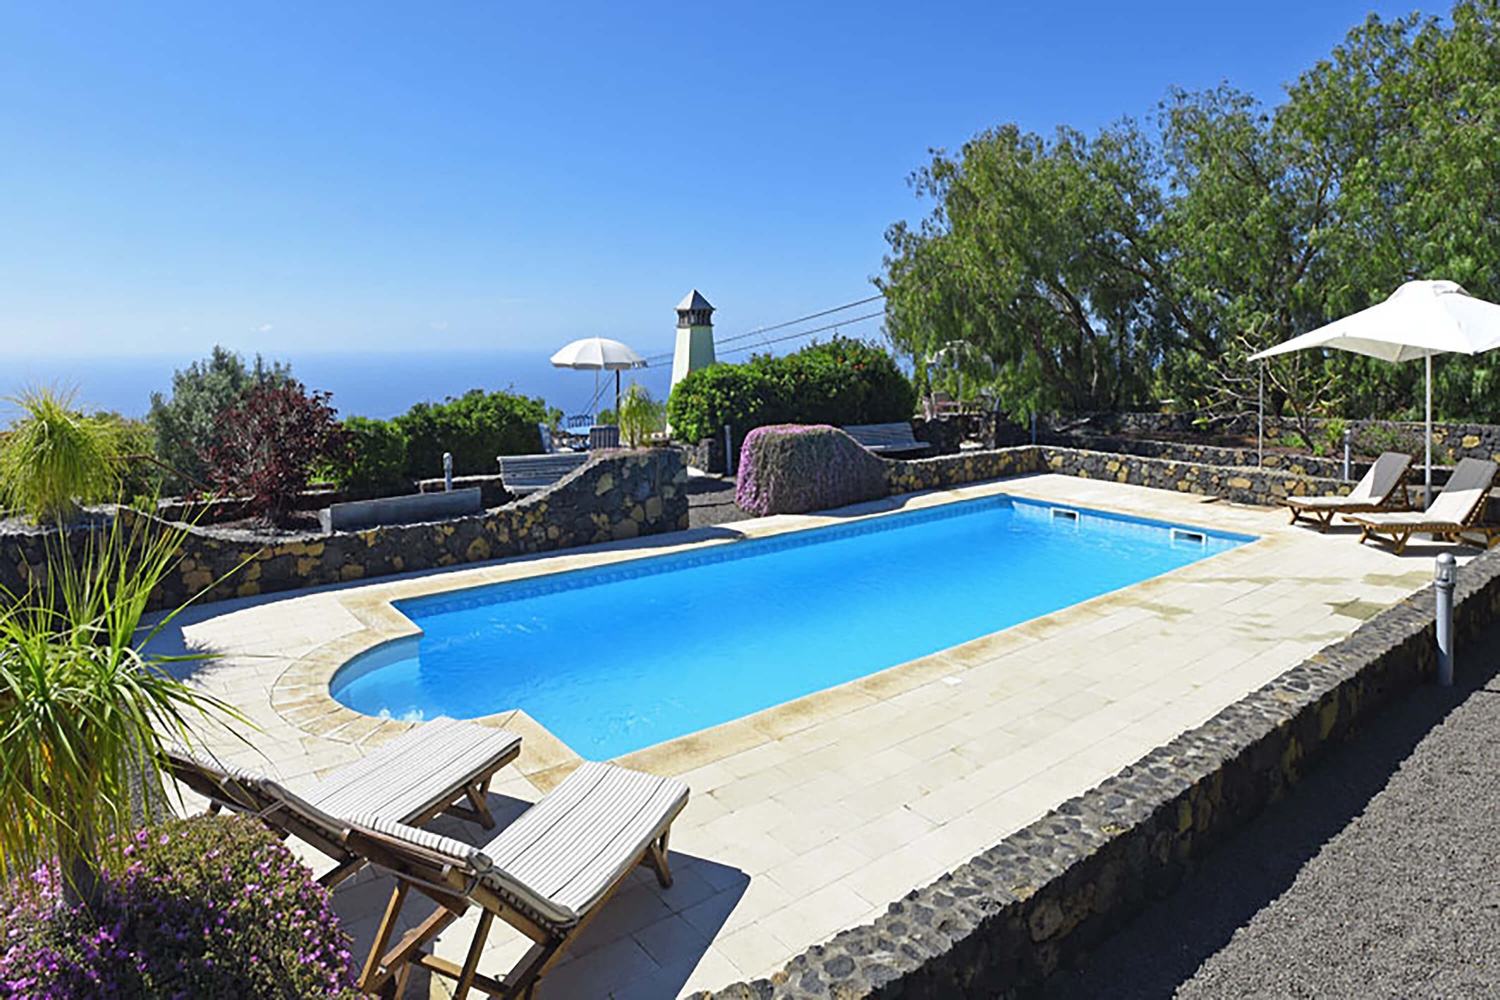 Prázdninový dům pro dvě osoby s výbornou chutí, s krásnou terasou se skleněnými stěnami a velkým společným bazénem